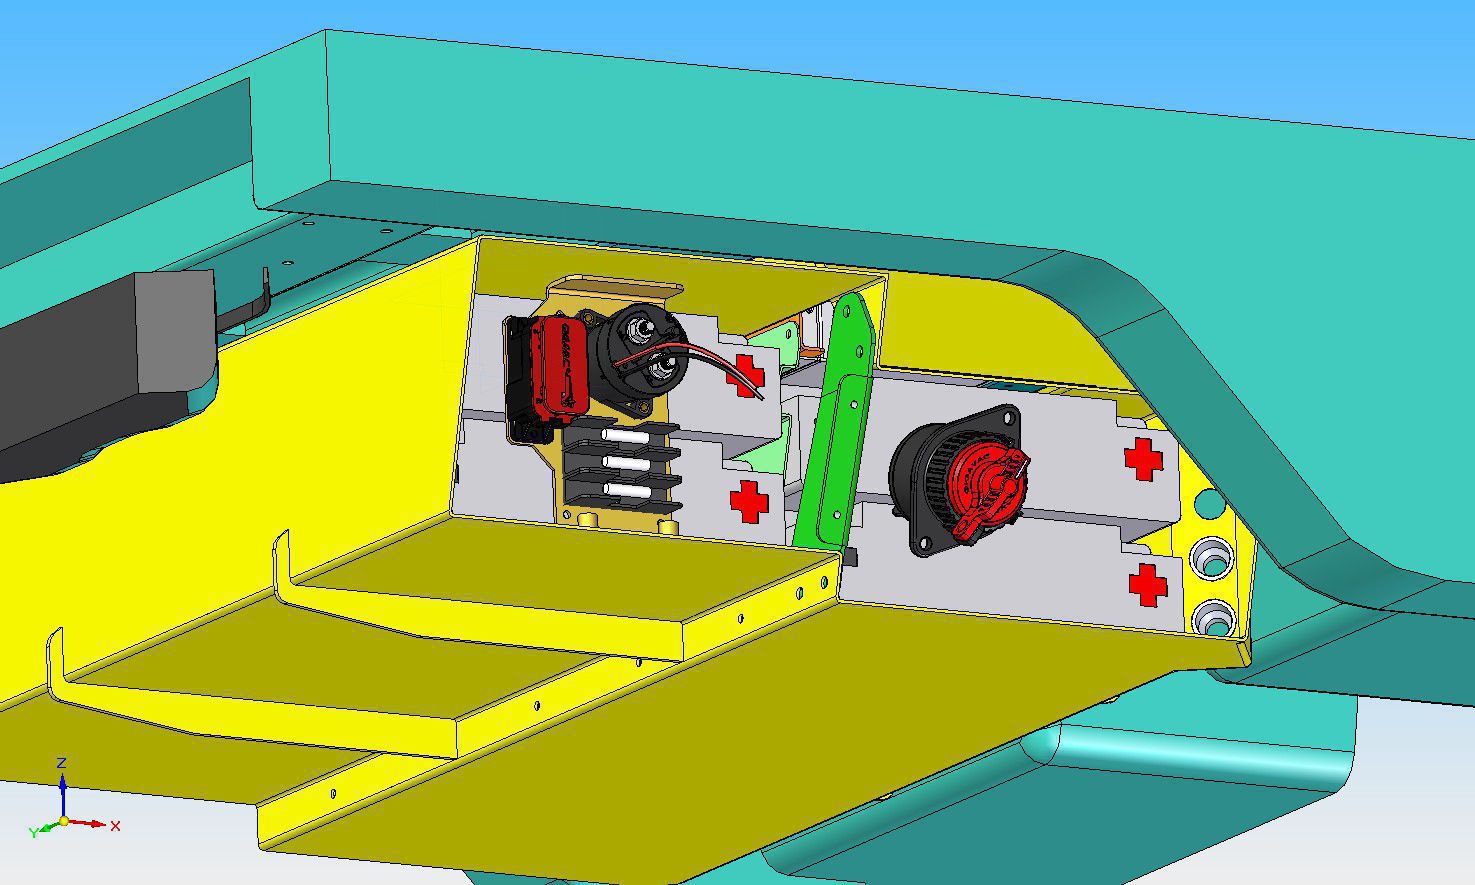 il modello 3D del box batterie (giallo) in acciaio inox con i principali dispositivi interni, teleruttore motore, moduli batteria, interruttore di emergenza